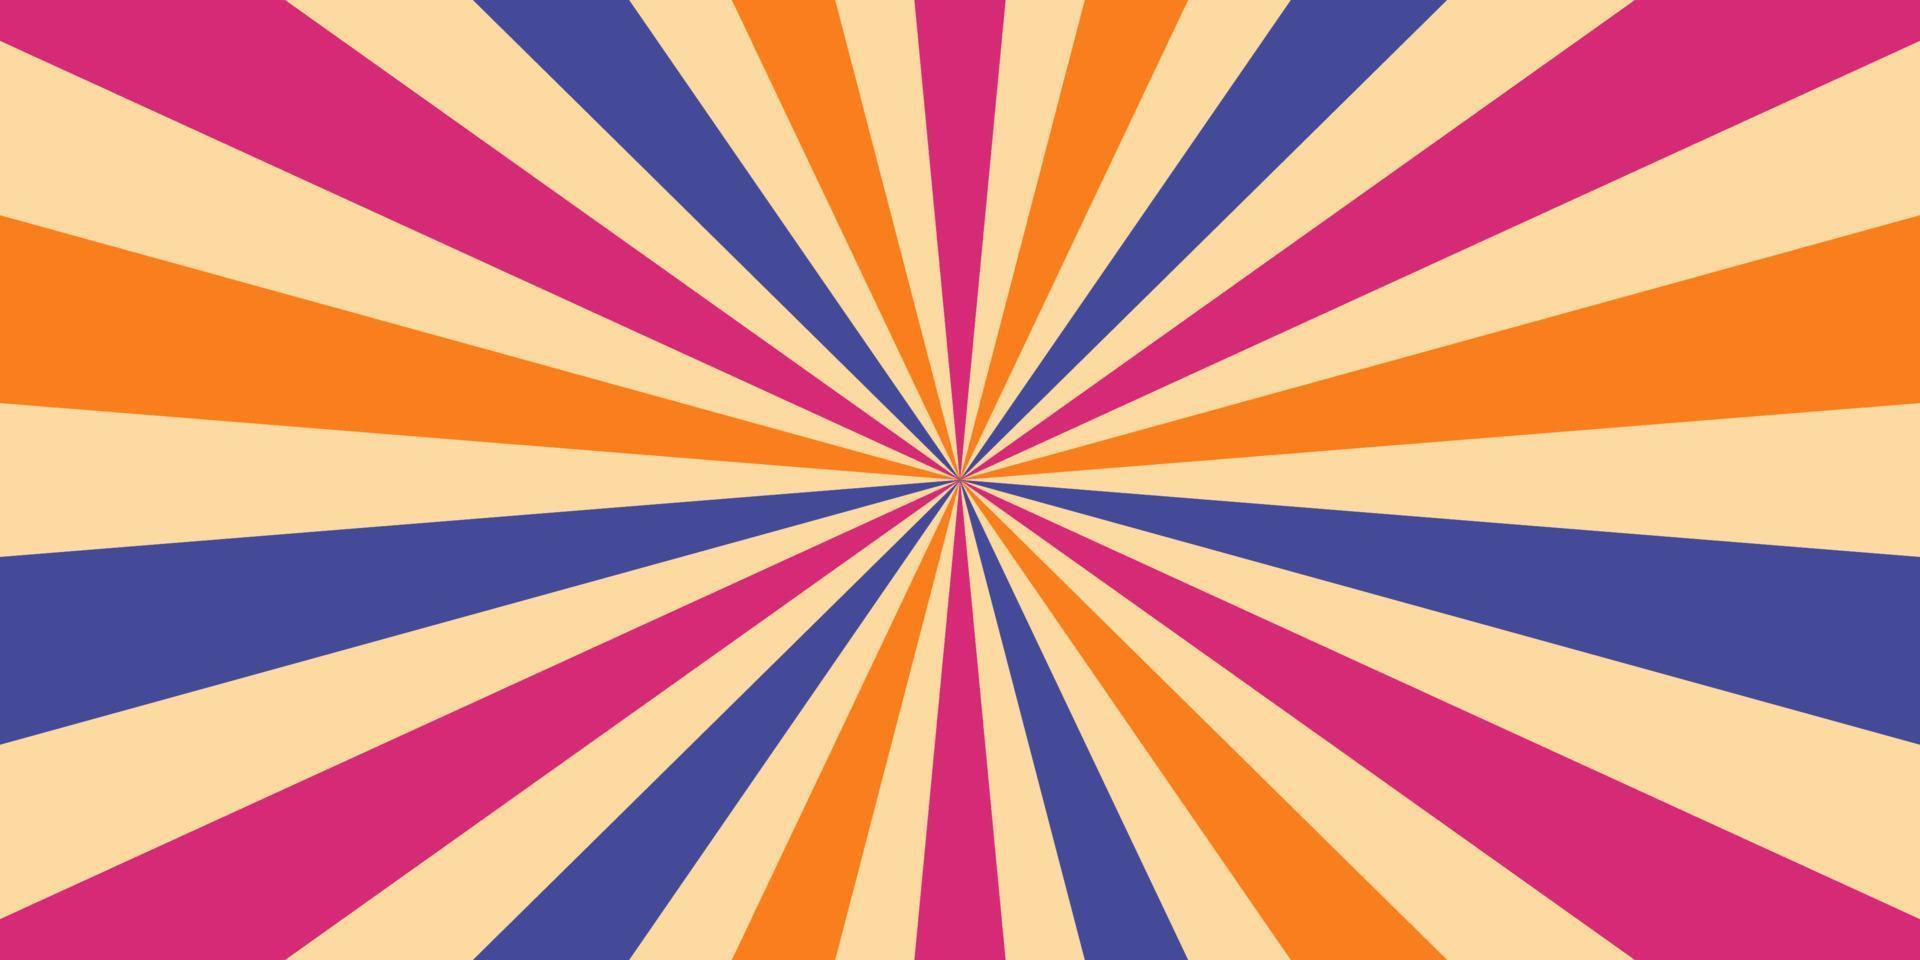 vol kleur starburst abstract achtergrond patroon met een mengen van Purper blauw en geel vector